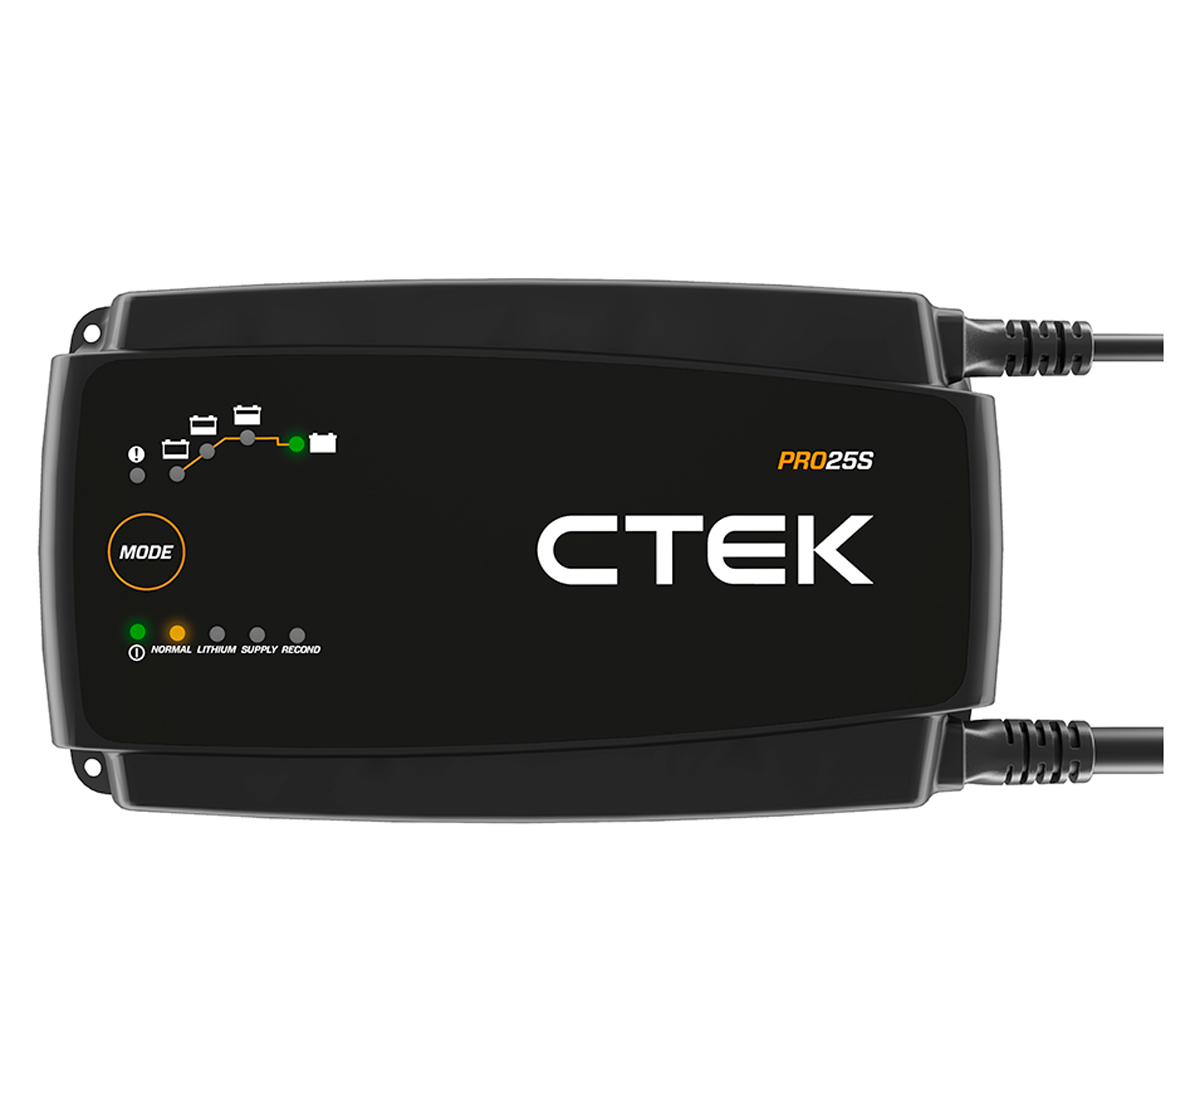 CTEK Pro 25S 12V 25A Battery Charger